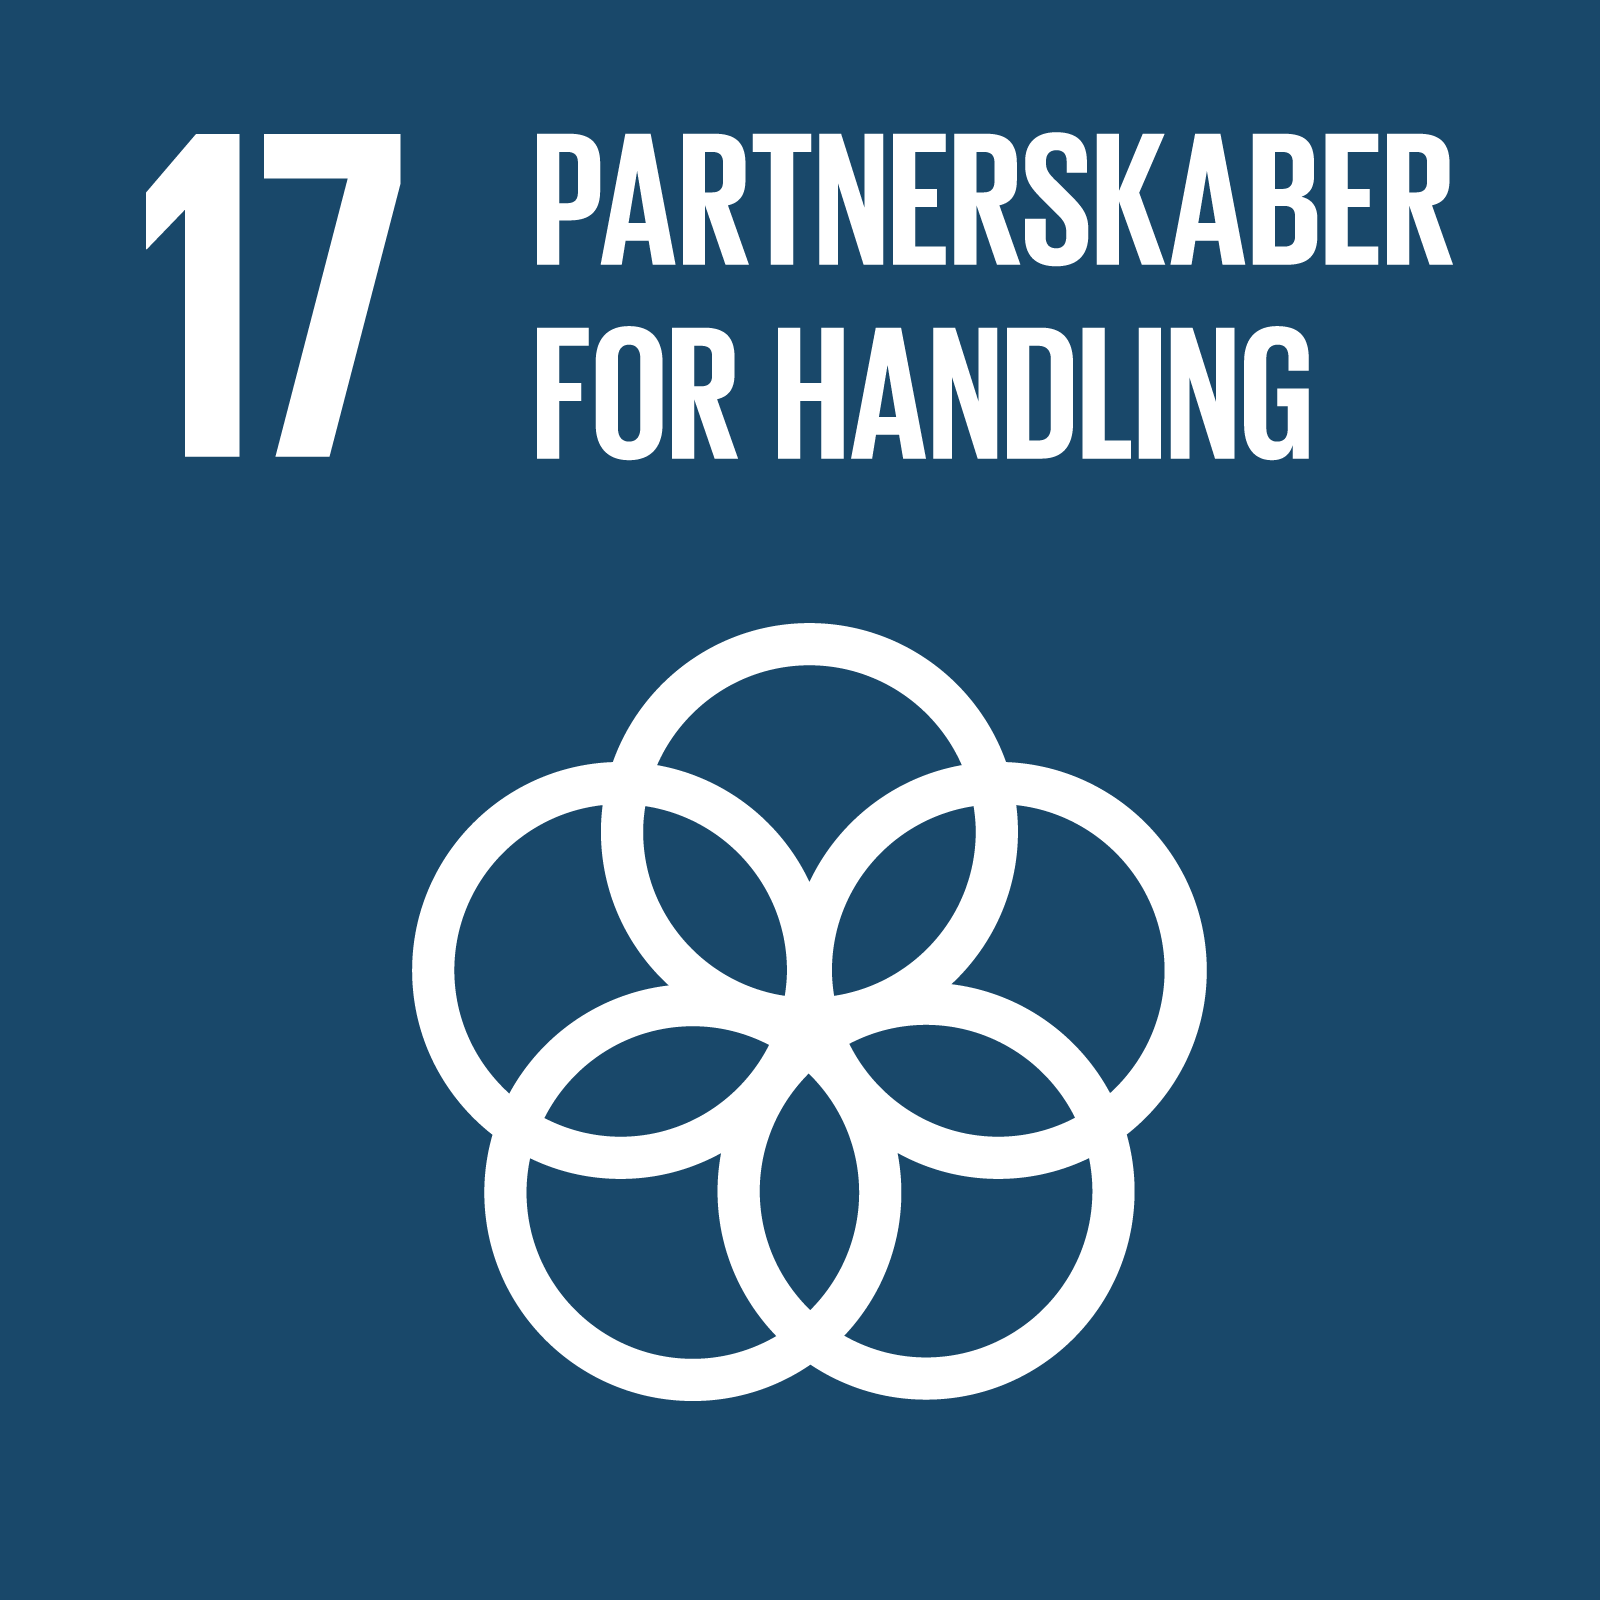 Verdensmål 17: Partnerskaber for handling